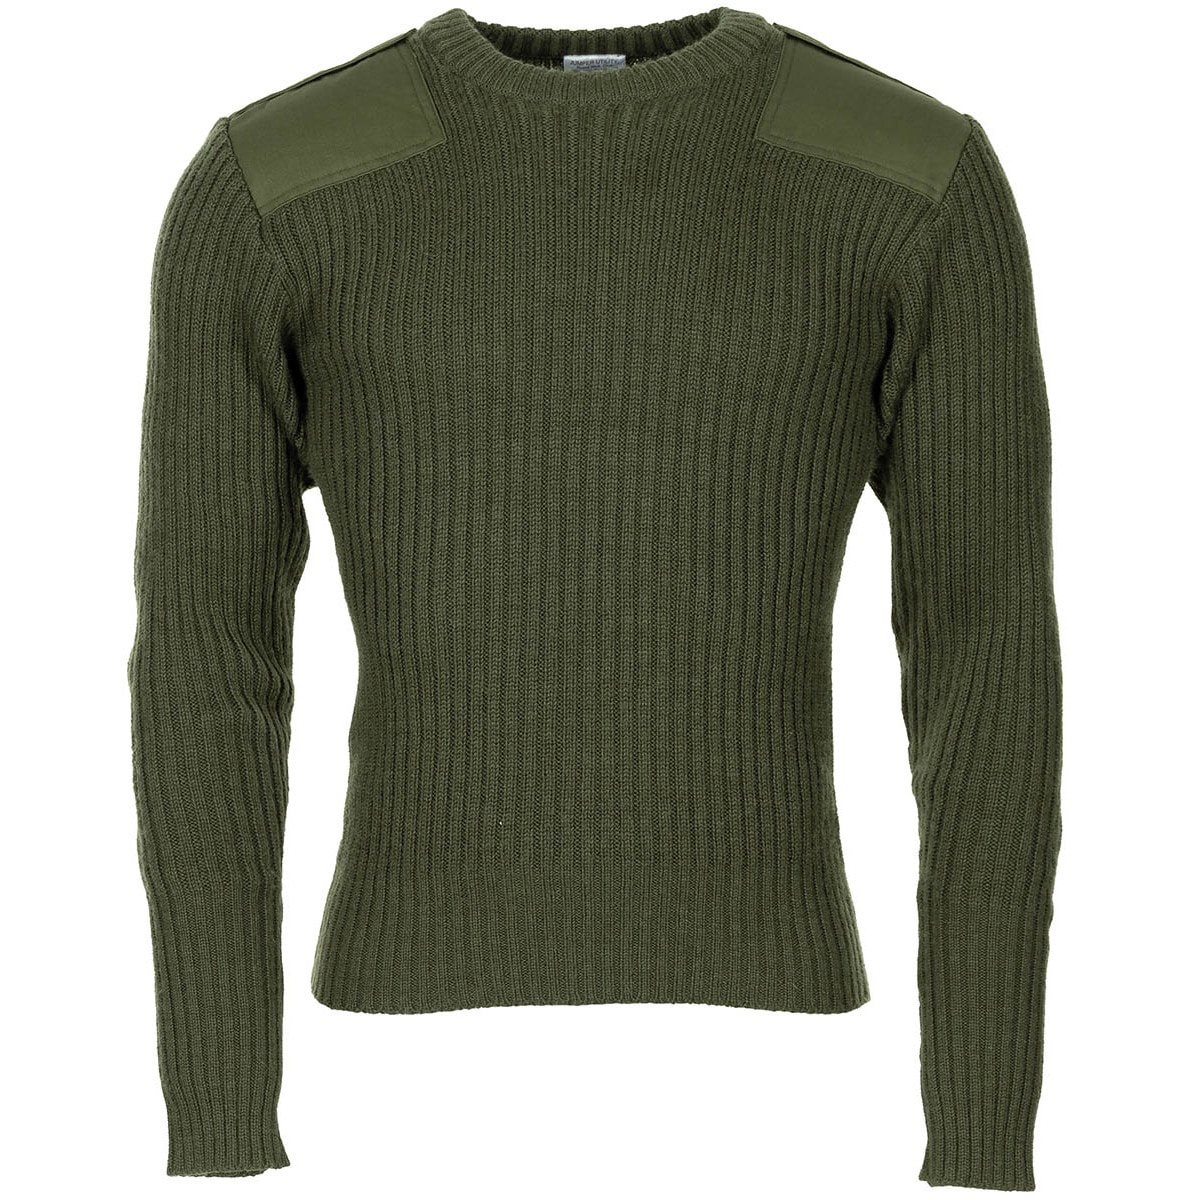 British Commando Sweater OLIVE used (size M) | MILITARY RANGE